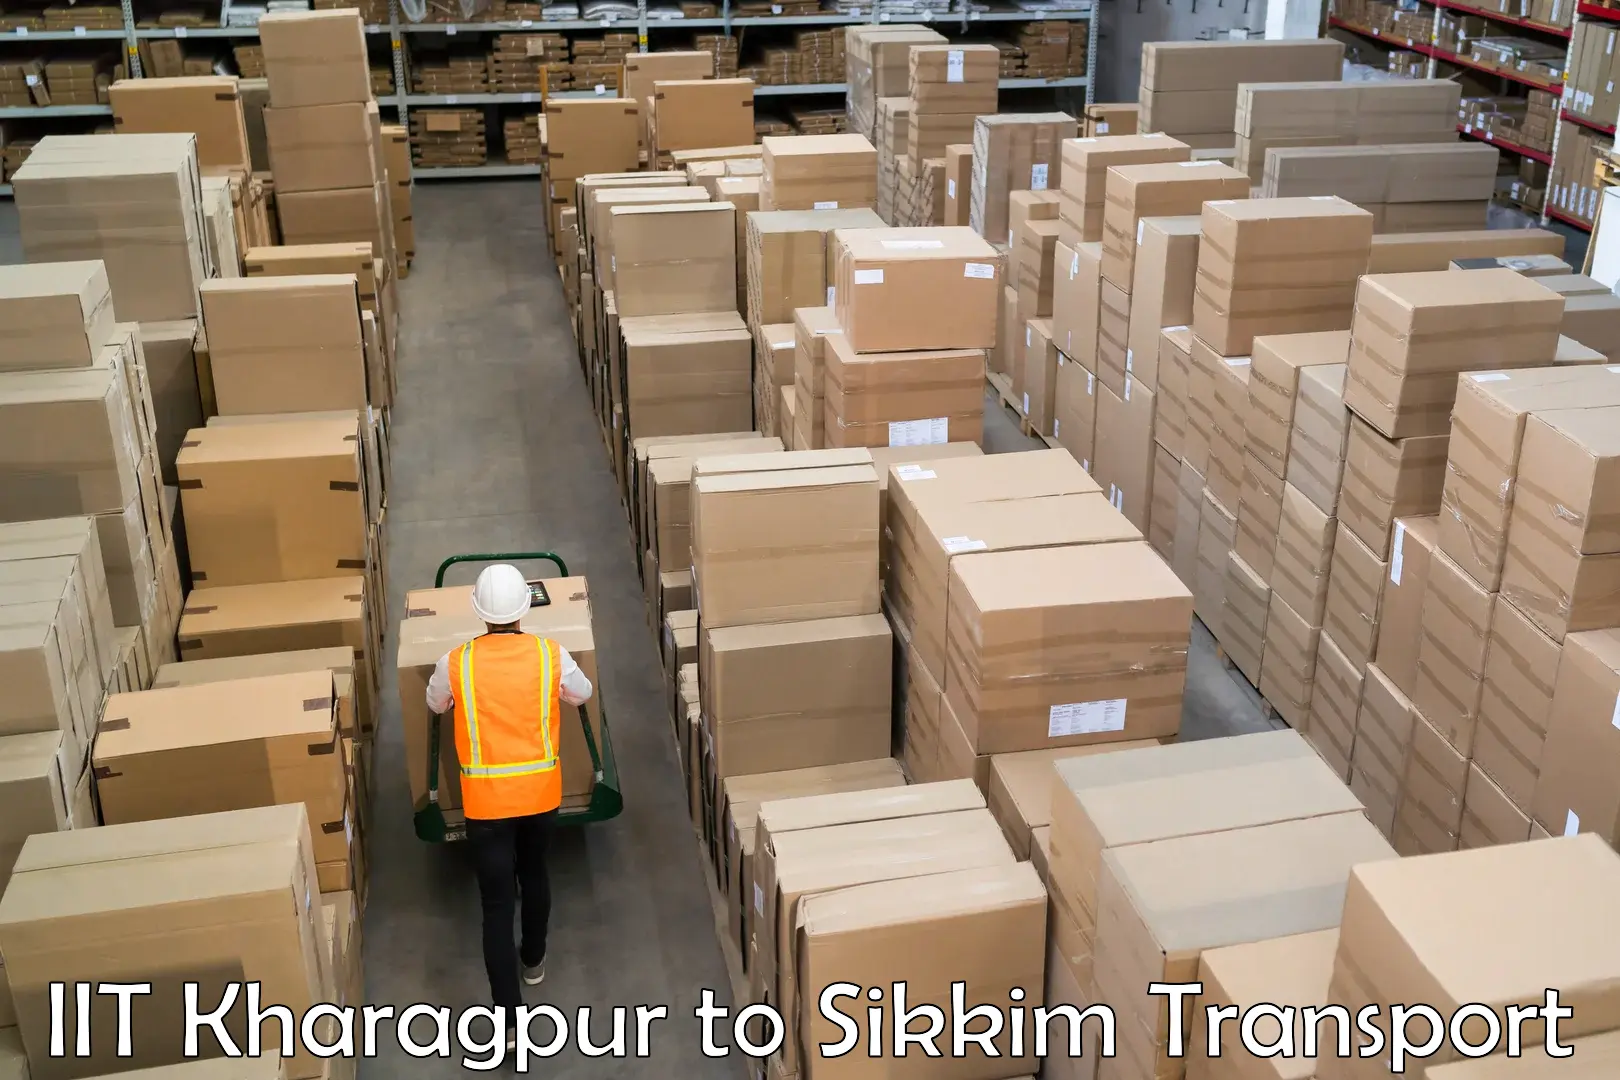 Shipping partner IIT Kharagpur to Mangan